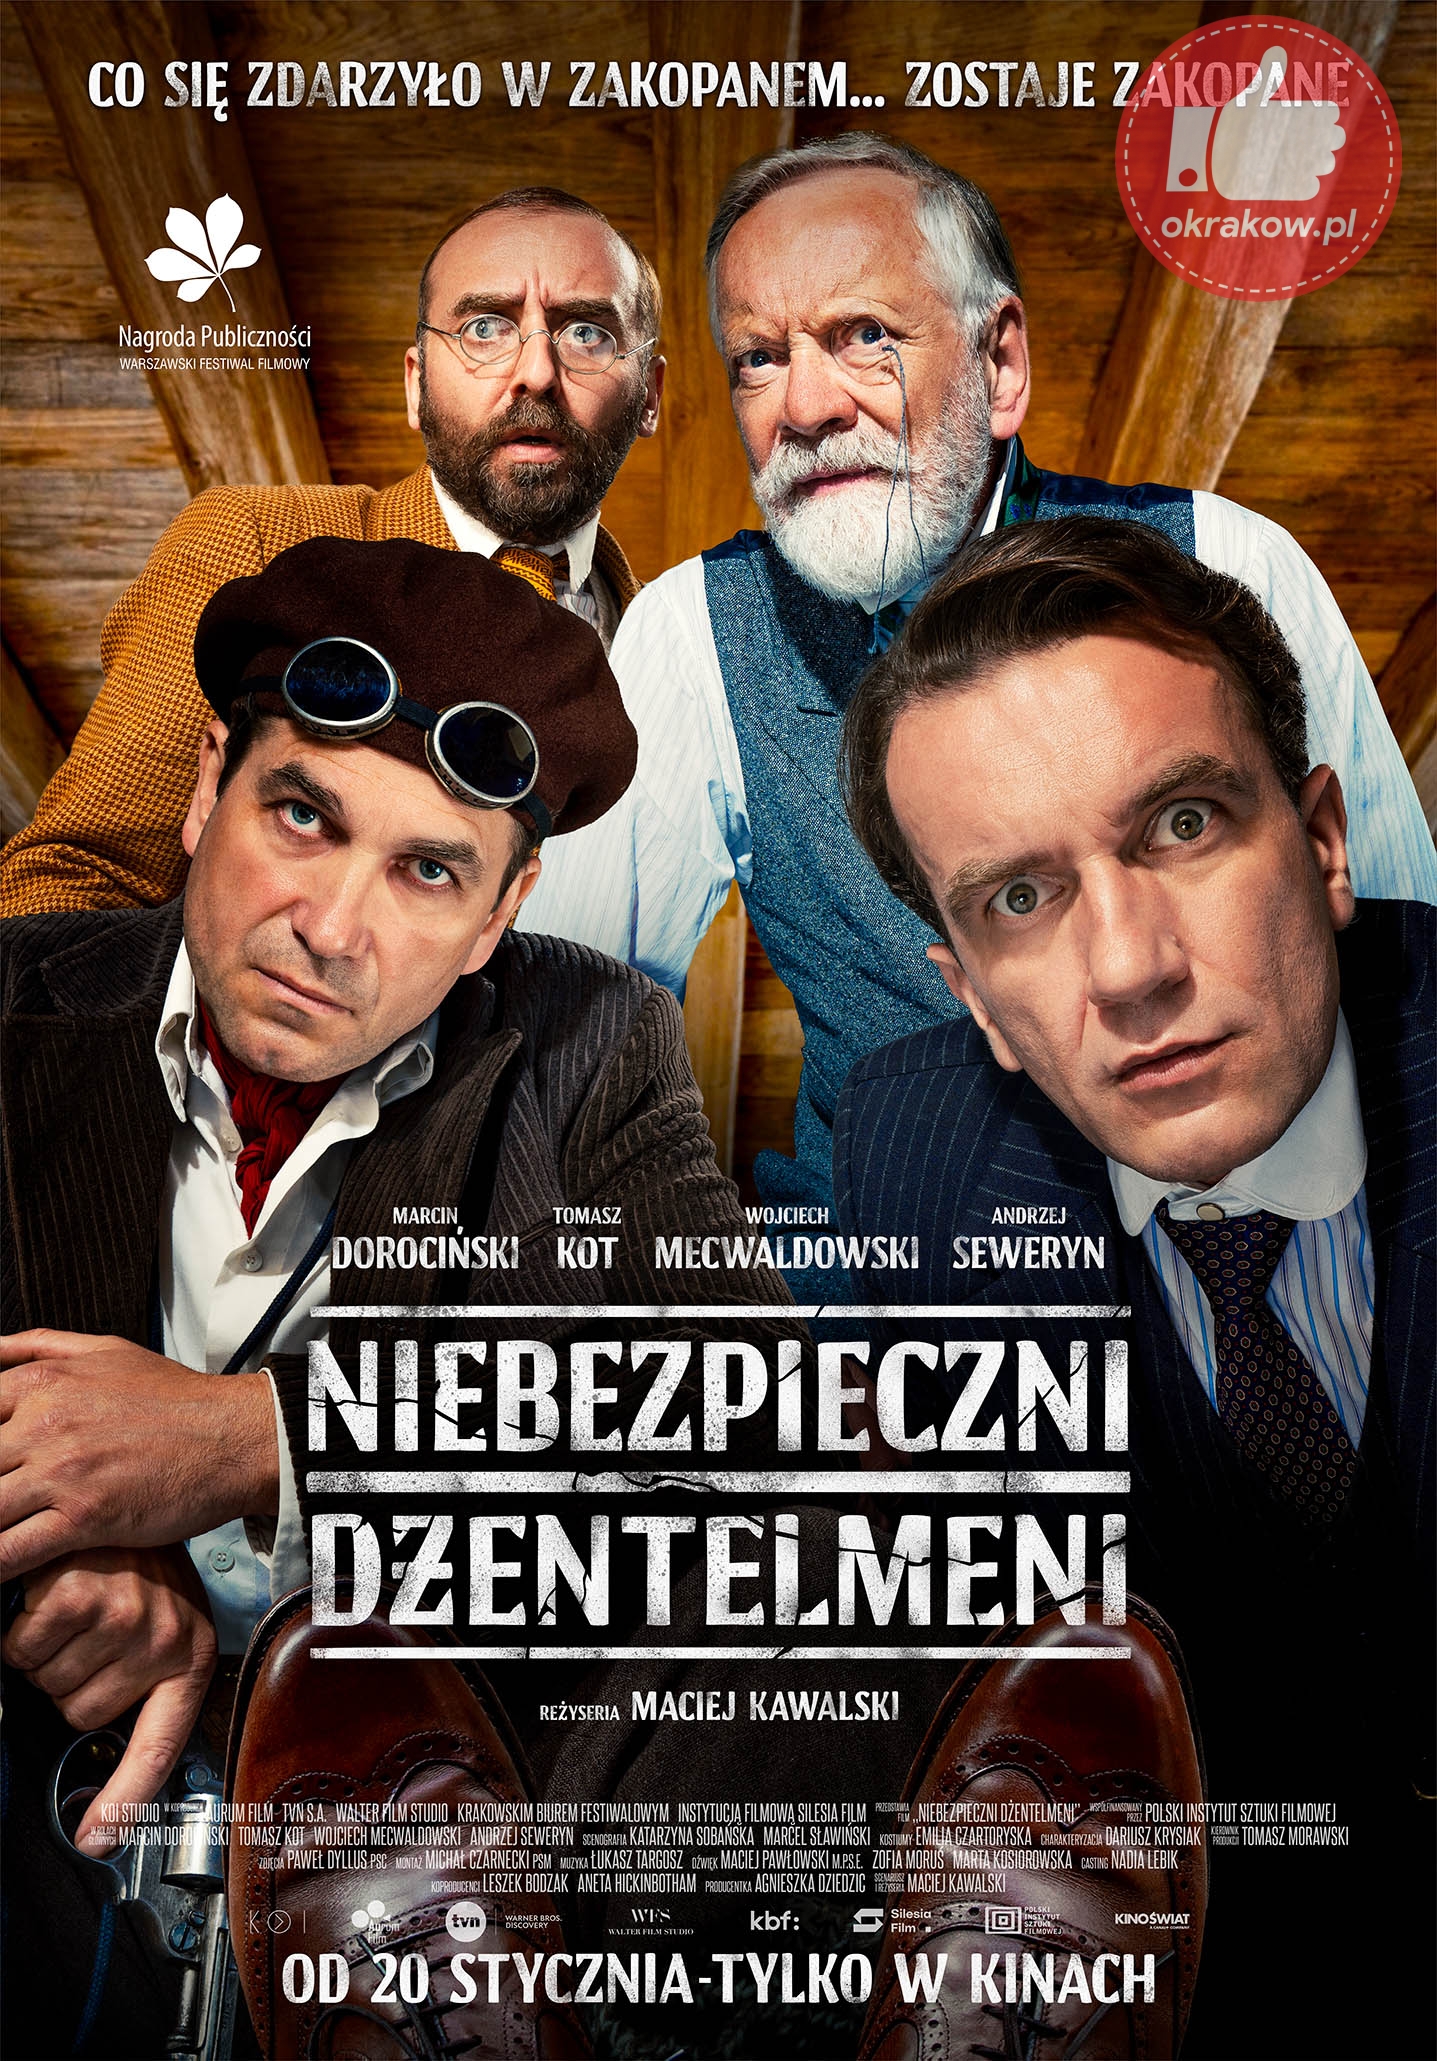 niebezpieczni dzentelmeni oficjalny plakat - KBF info: Krakowska premiera filmu "Niebezpieczni dżentelmeni"